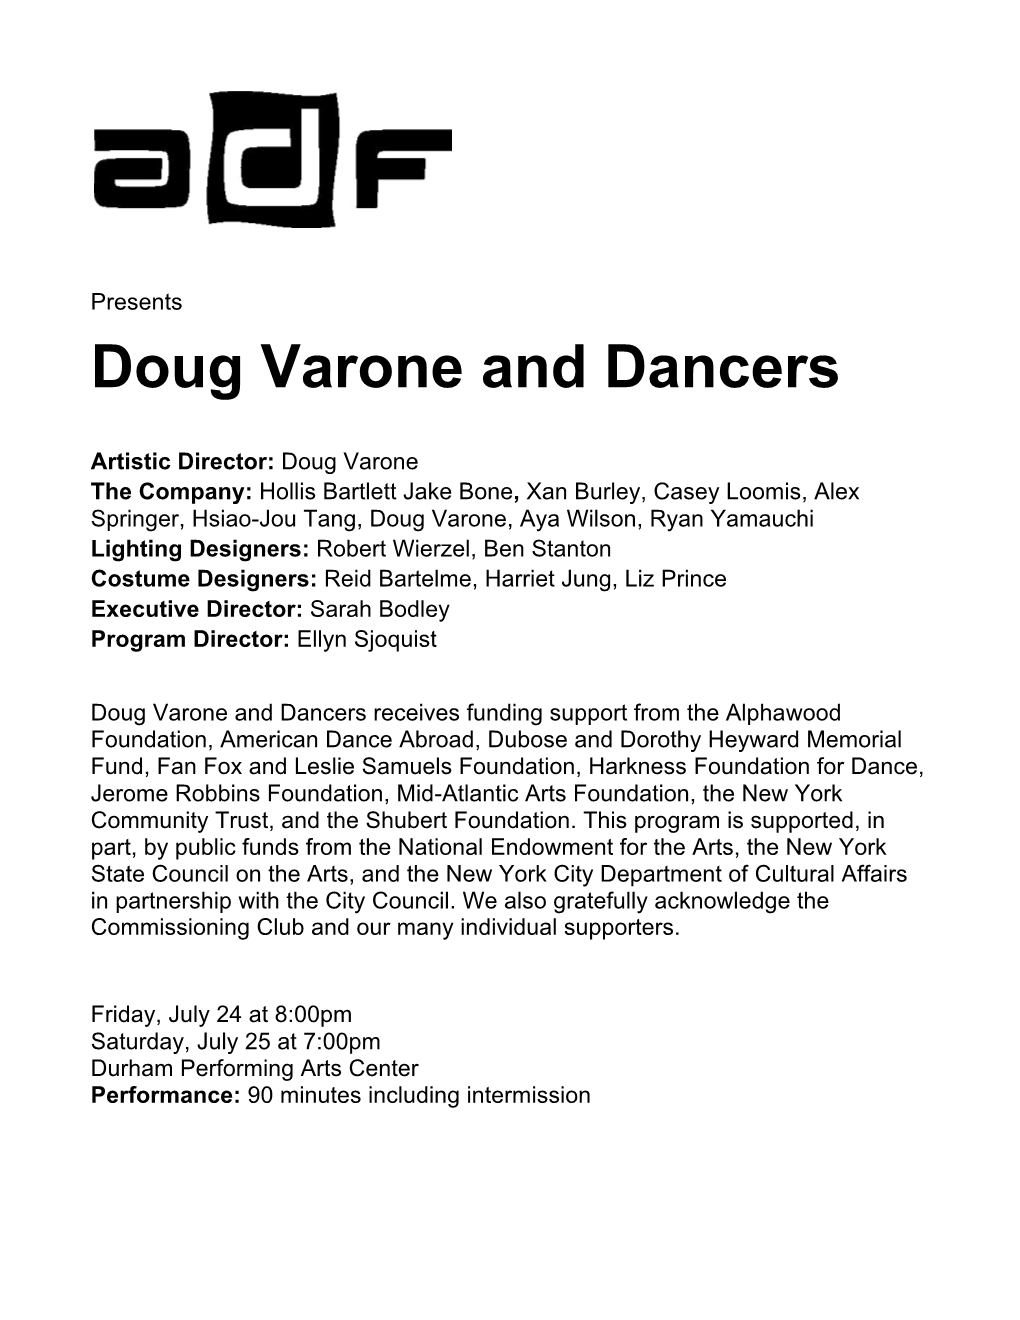 Doug Varone and Dancers